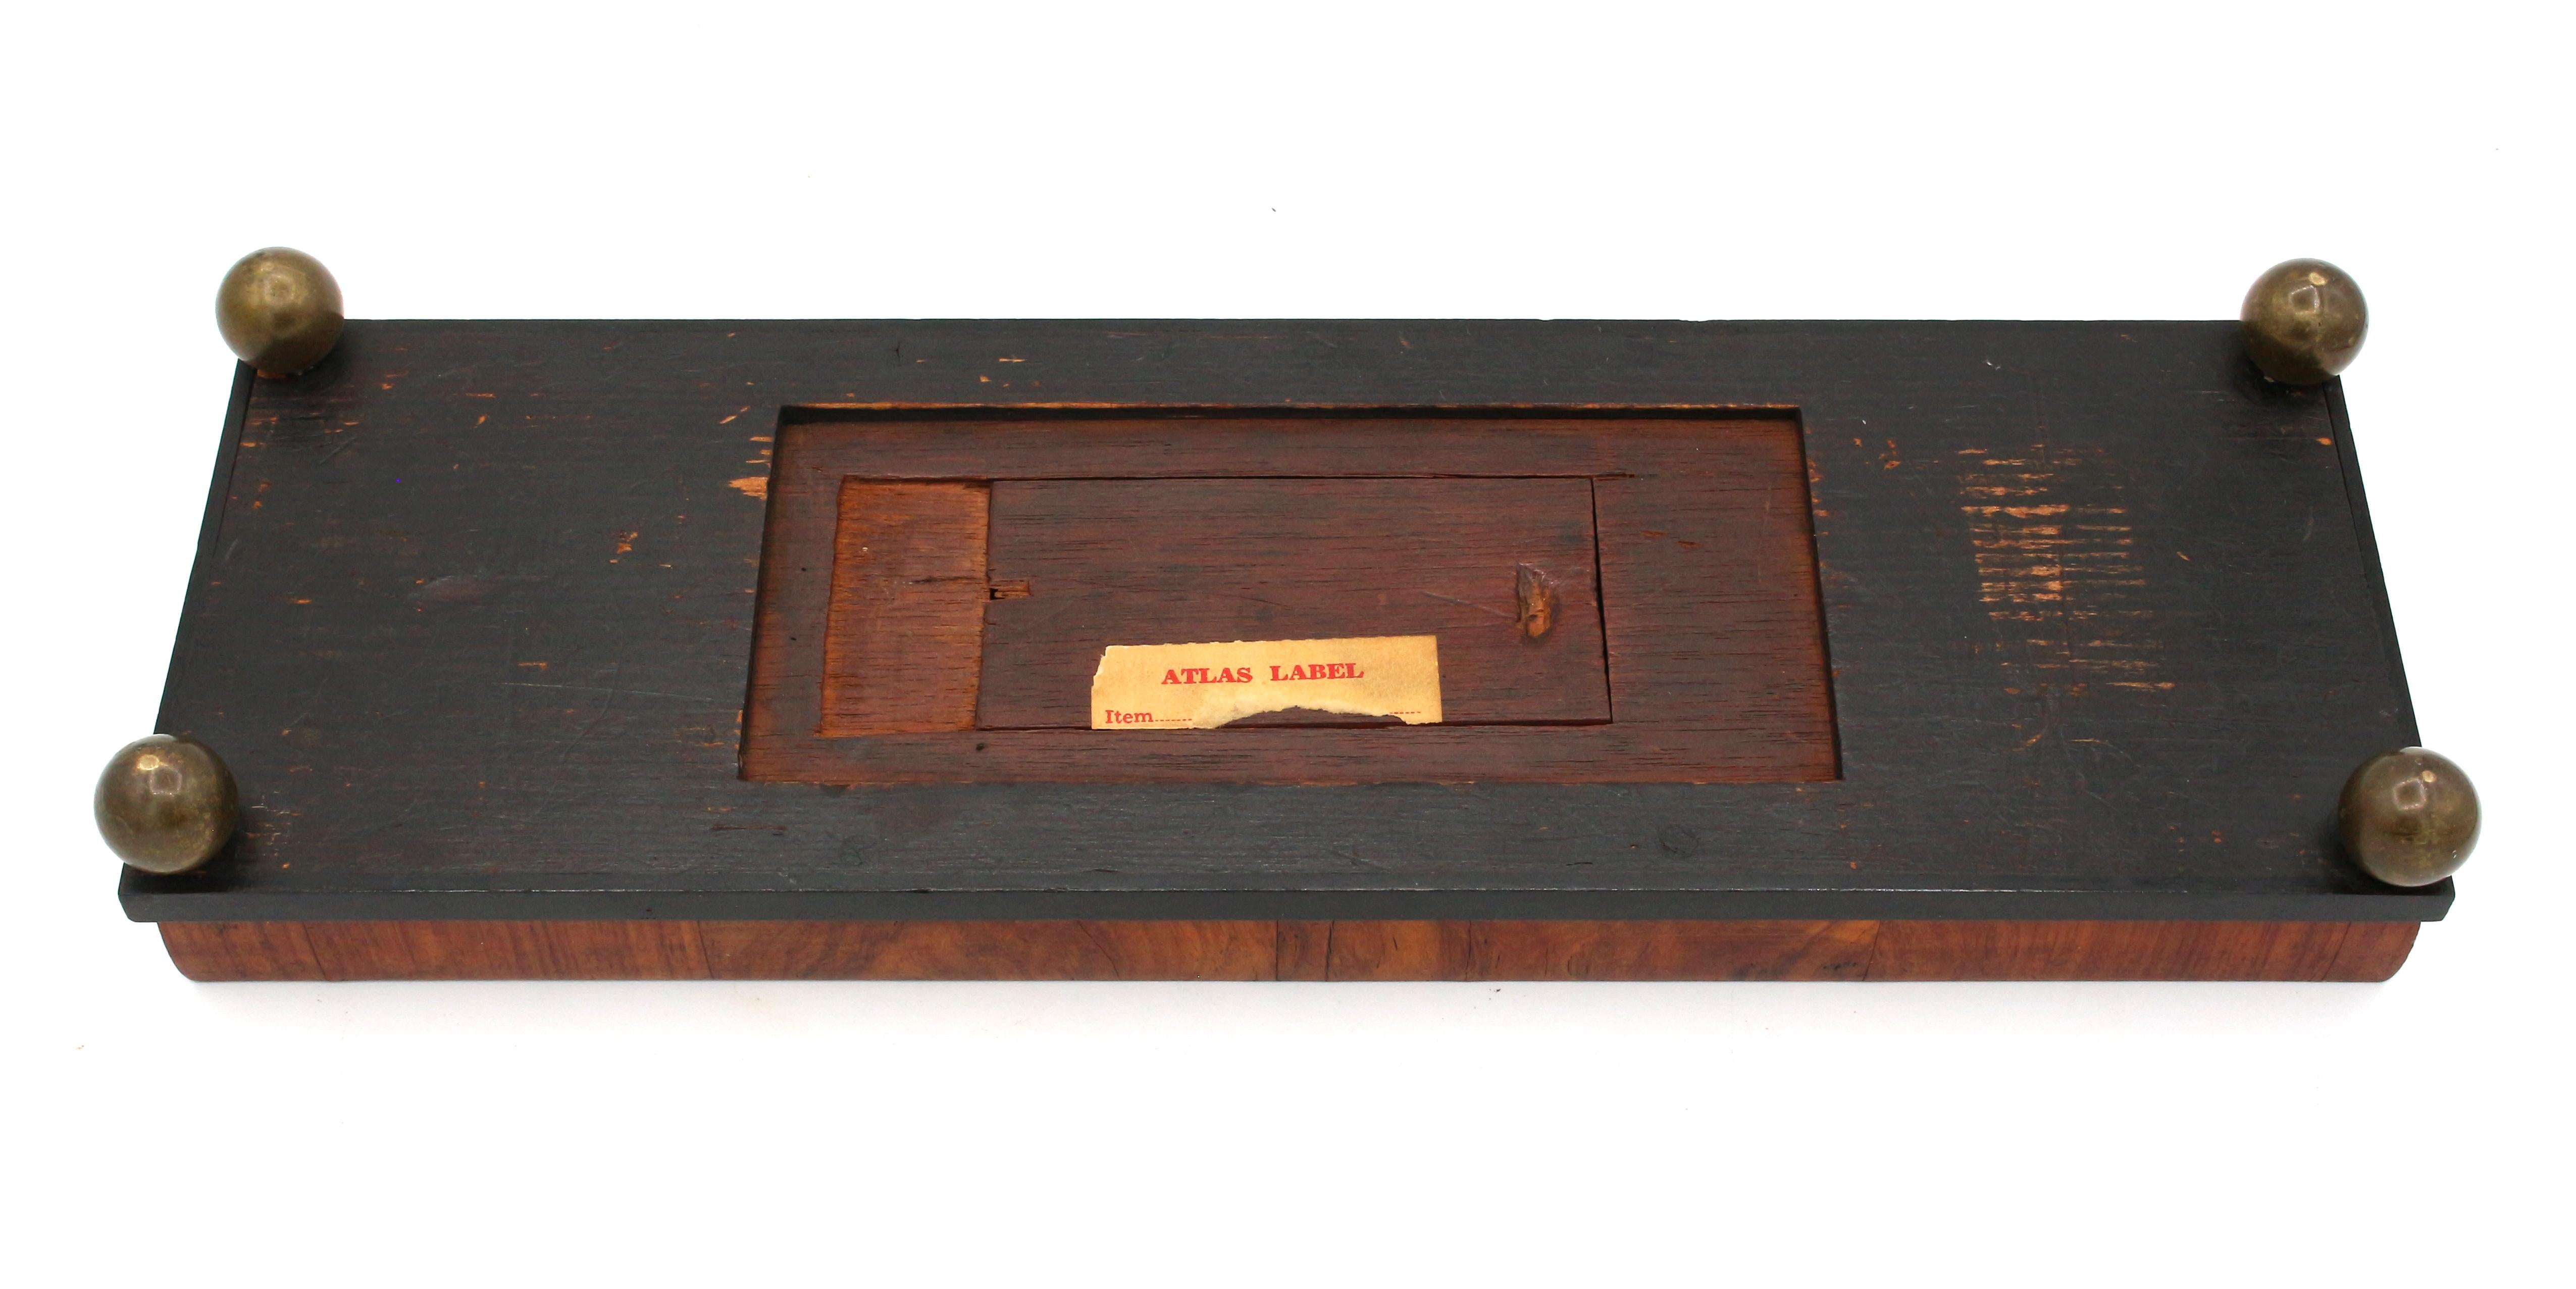 CIRCA 1860-80 Englisches Cribbage Board mit Intarsien (Mittleres 19. Jahrhundert)